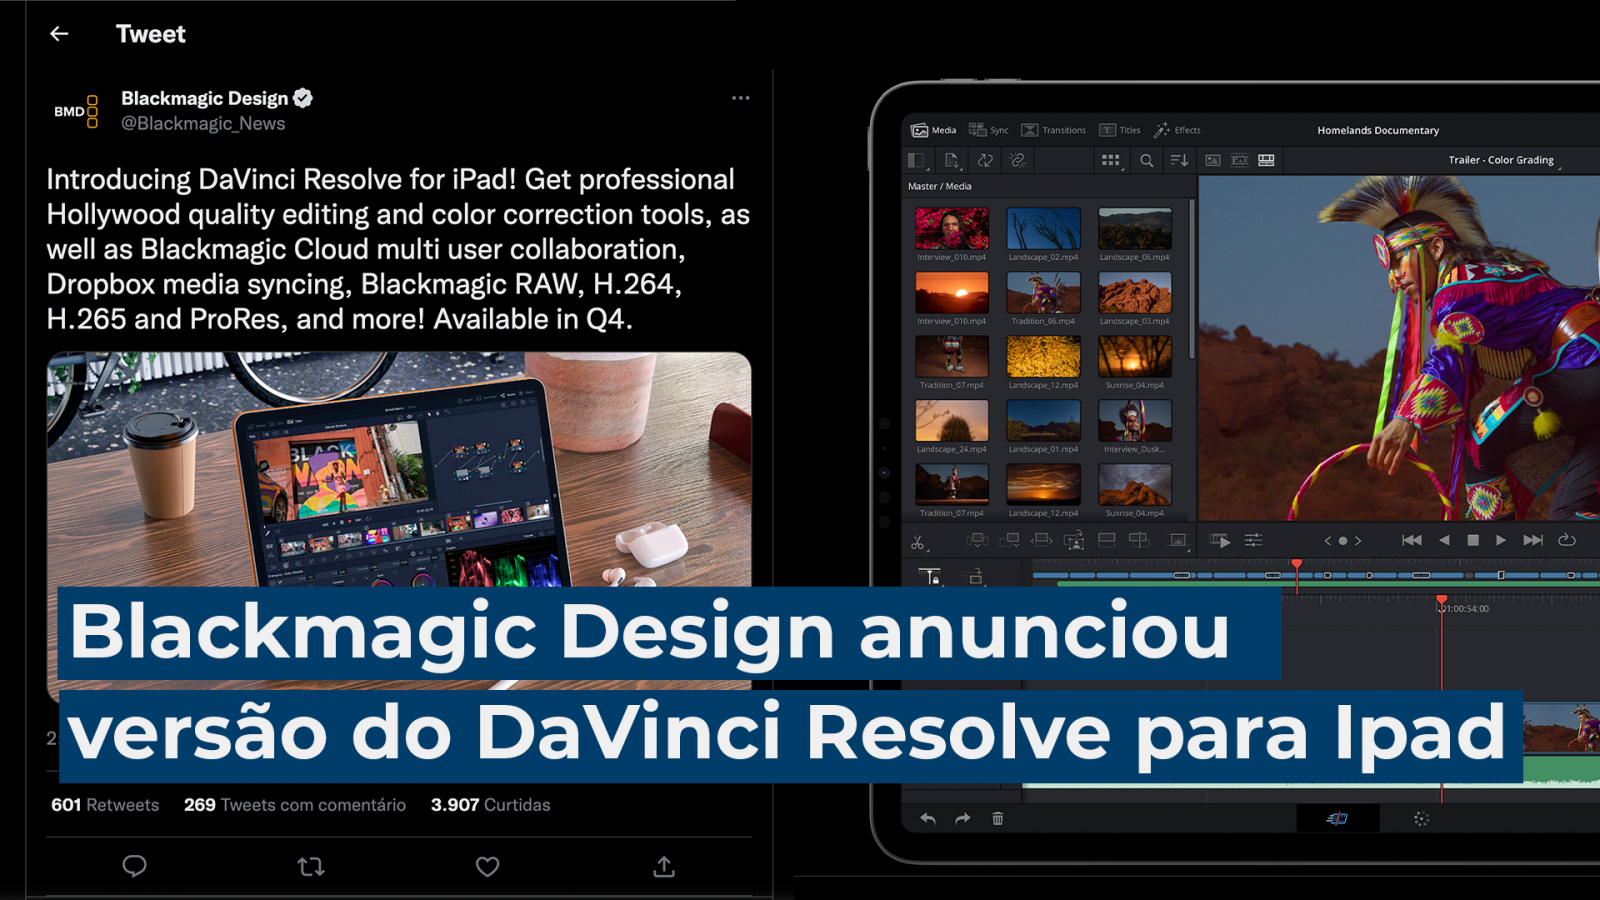 Blackmagic Design anunciou uma versão do DaVinci Resolve para Ipad